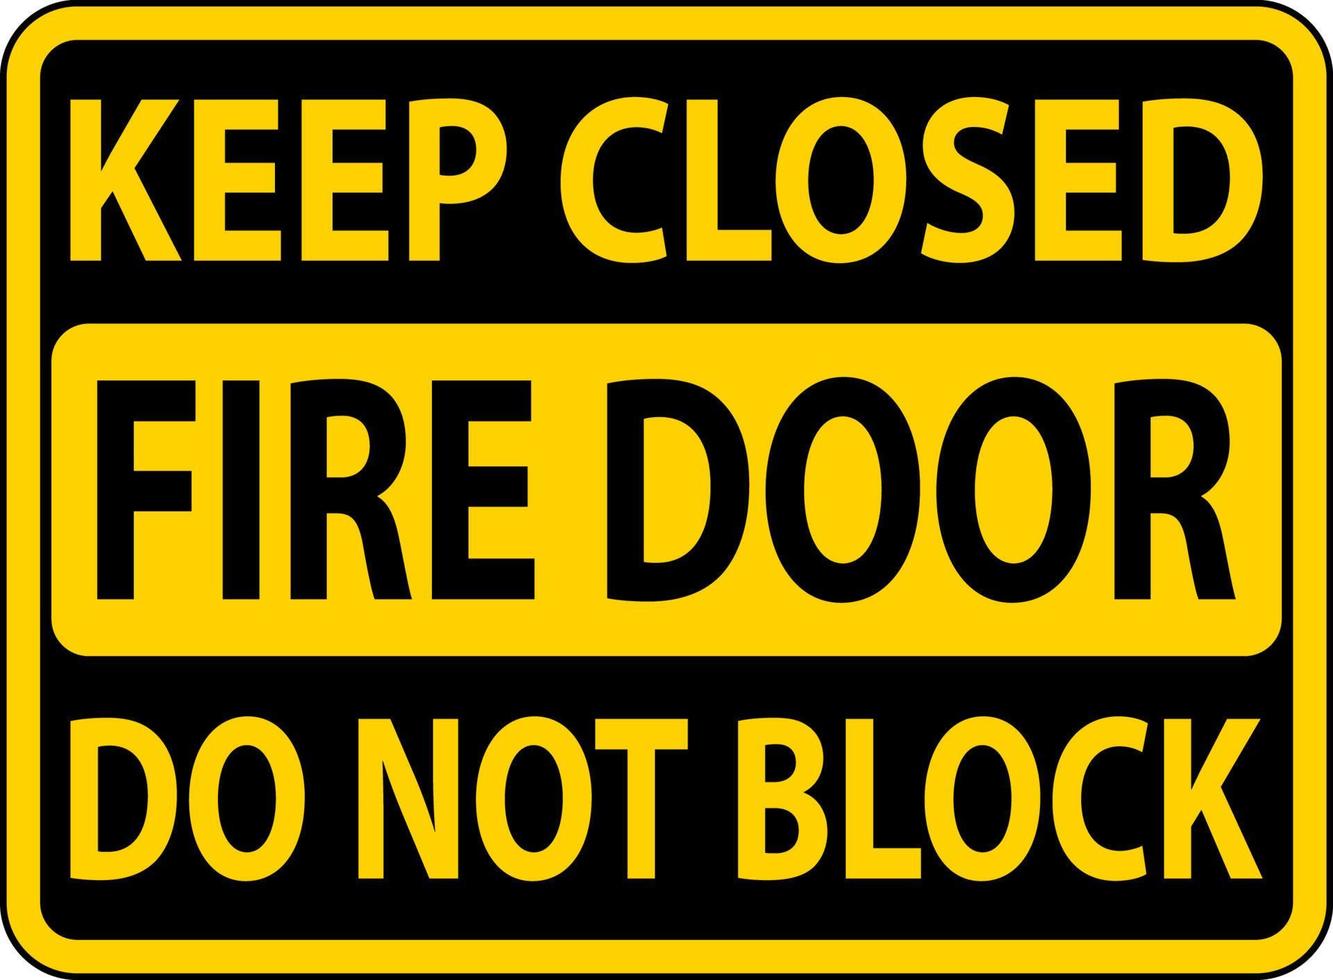 mantenere chiuso fare non bloccare fuoco porta cartello vettore